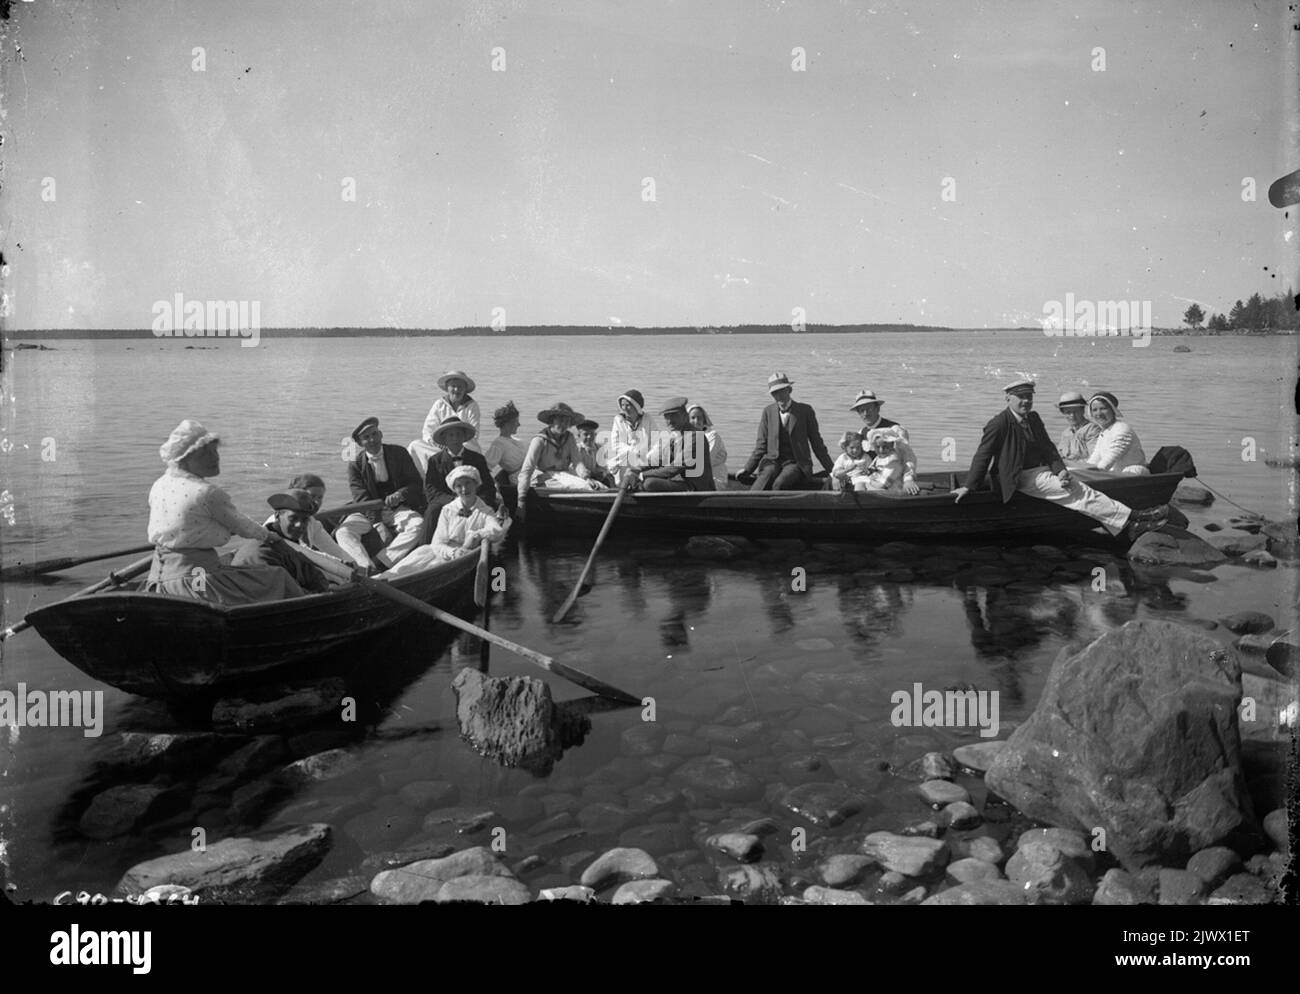 Due barche a remi con persone, probabilmente a Deadmanskär. två roddbåtar med människor, troligen vid Dödmansskär. Foto Stock